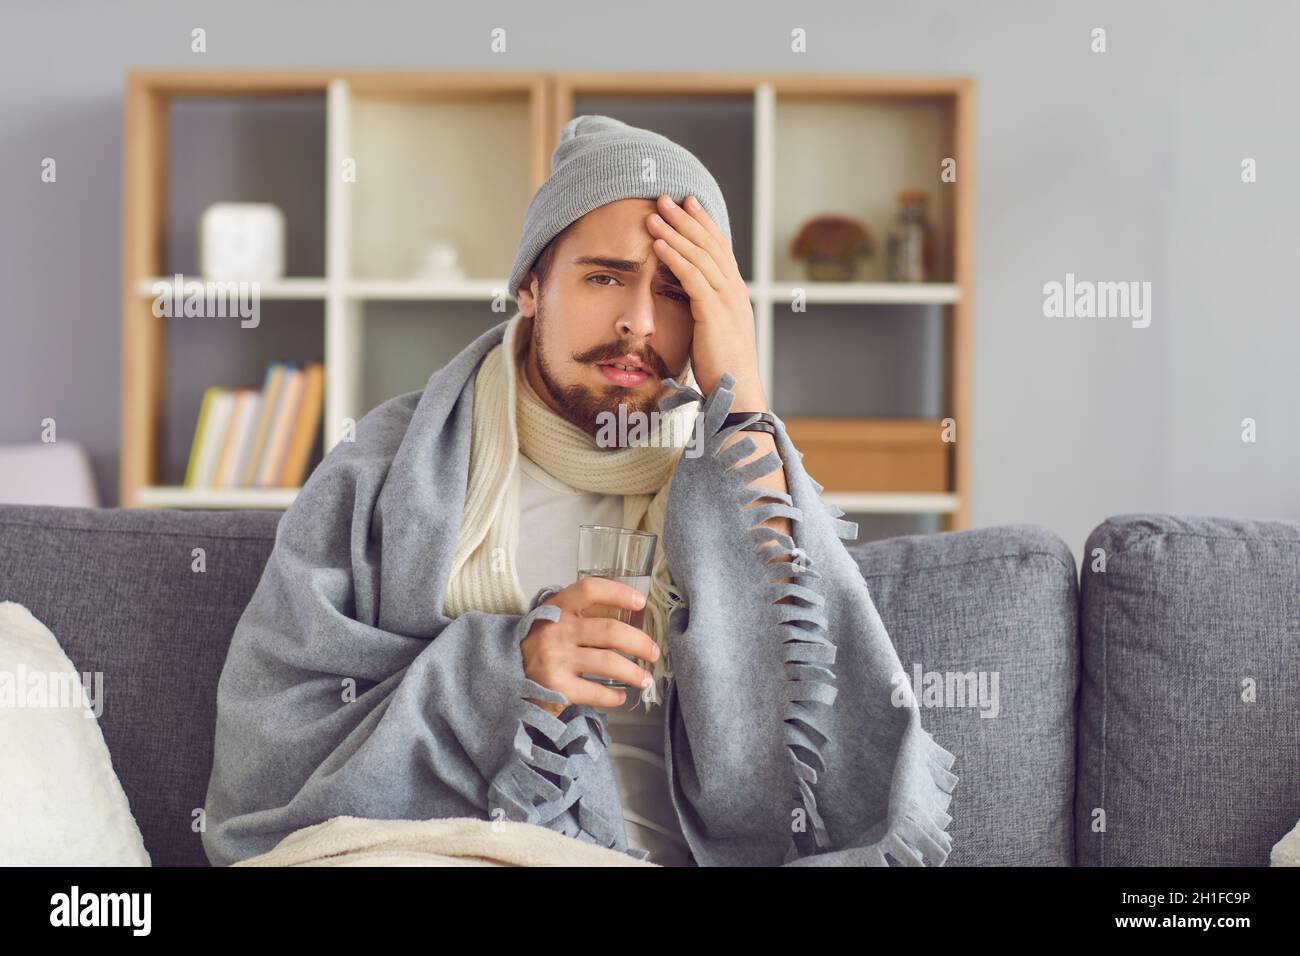 Un homme malade avec un verre d'eau dans sa main souffre d'un grand mal de tête assis sur le canapé. Banque D'Images